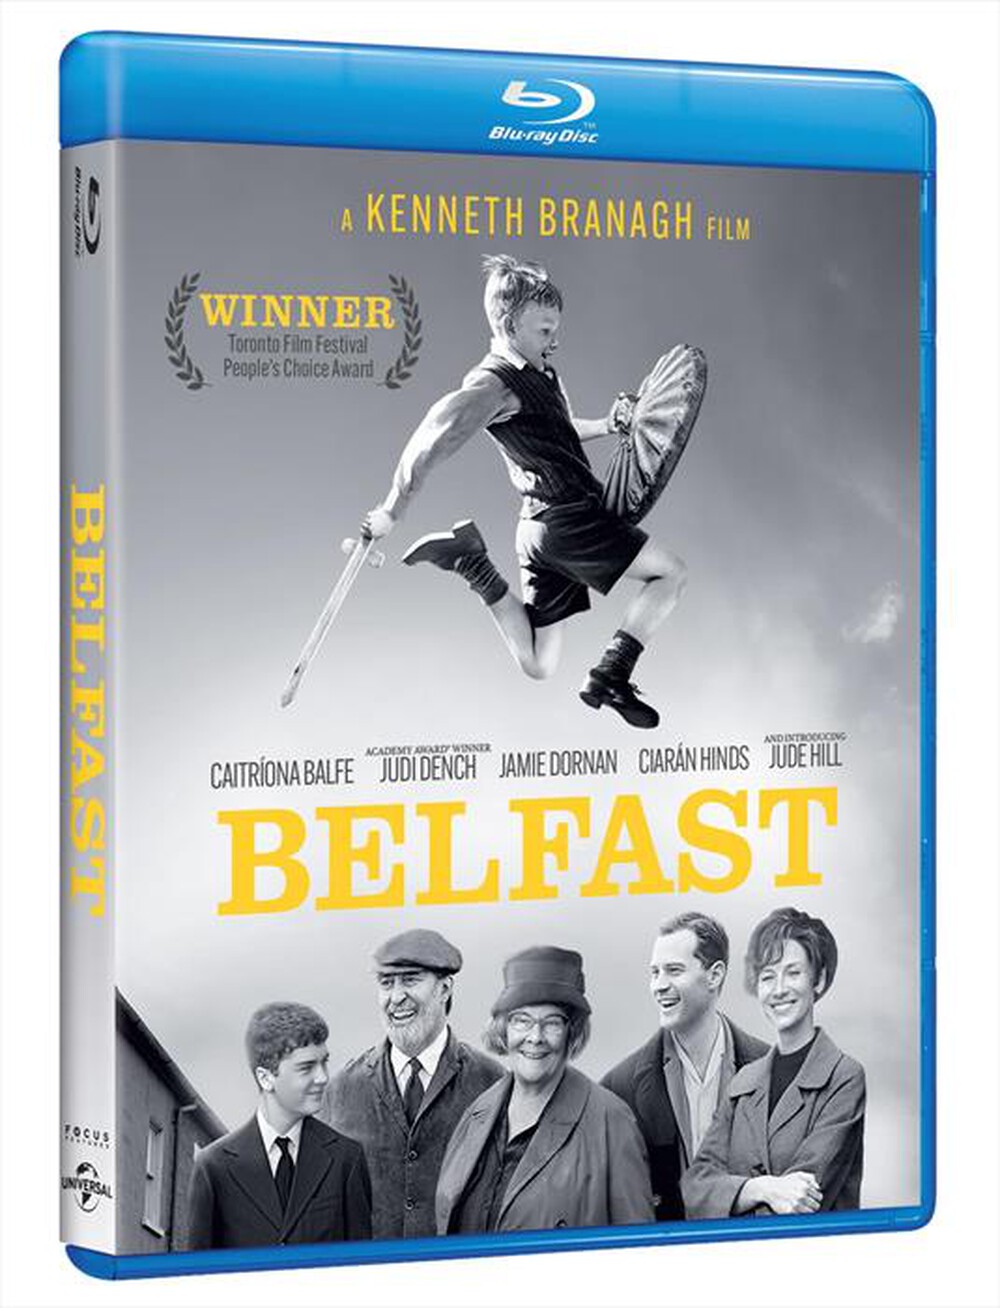 "WARNER HOME VIDEO - Belfast"